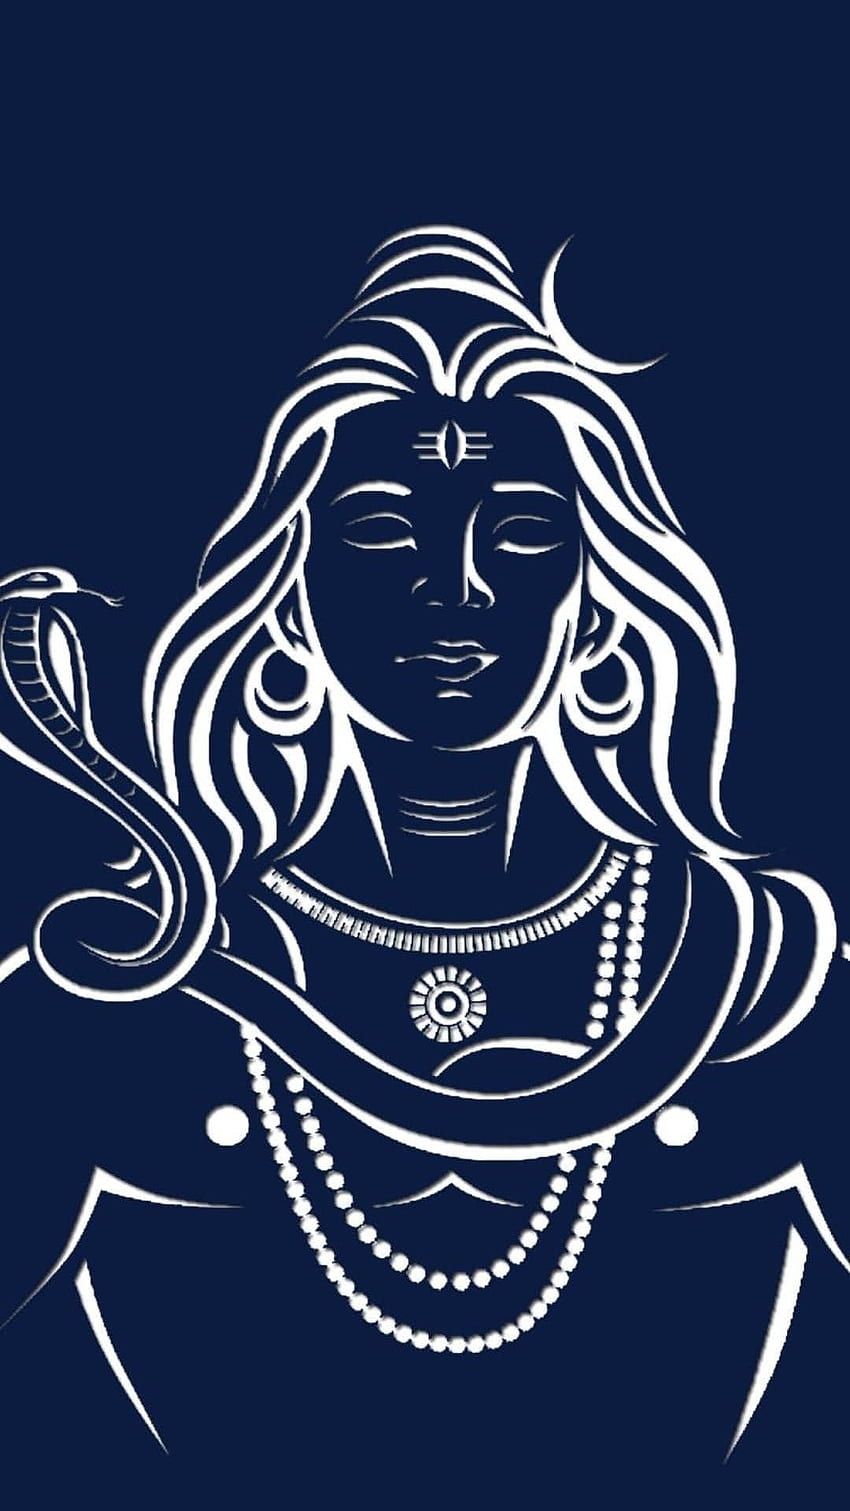 King of tamilnadu on Craiyon